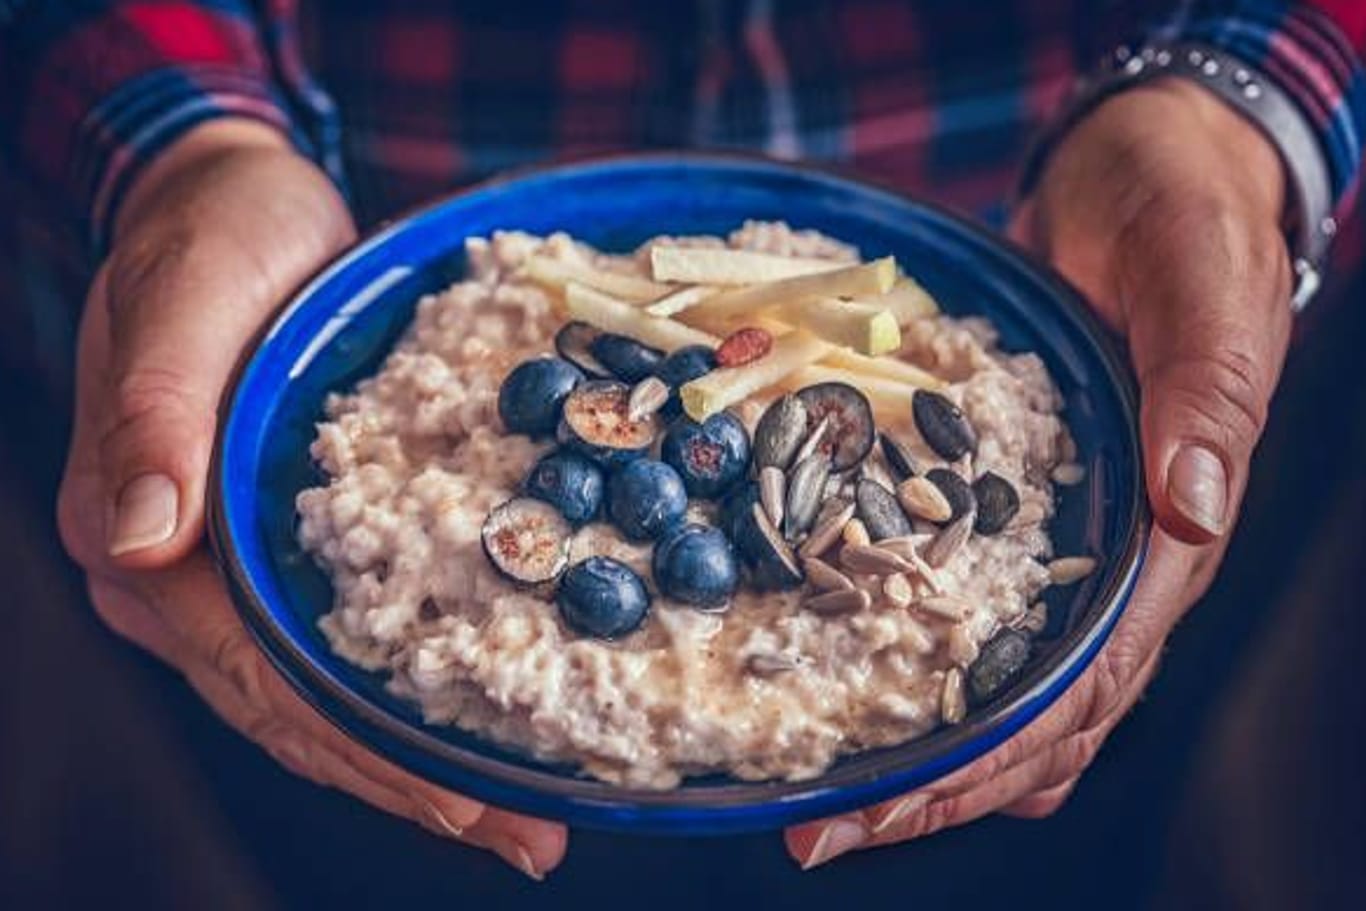 Beliebtes Frühstück: Haferflocken können sich positiv auf unsere Verdauung auswirken.